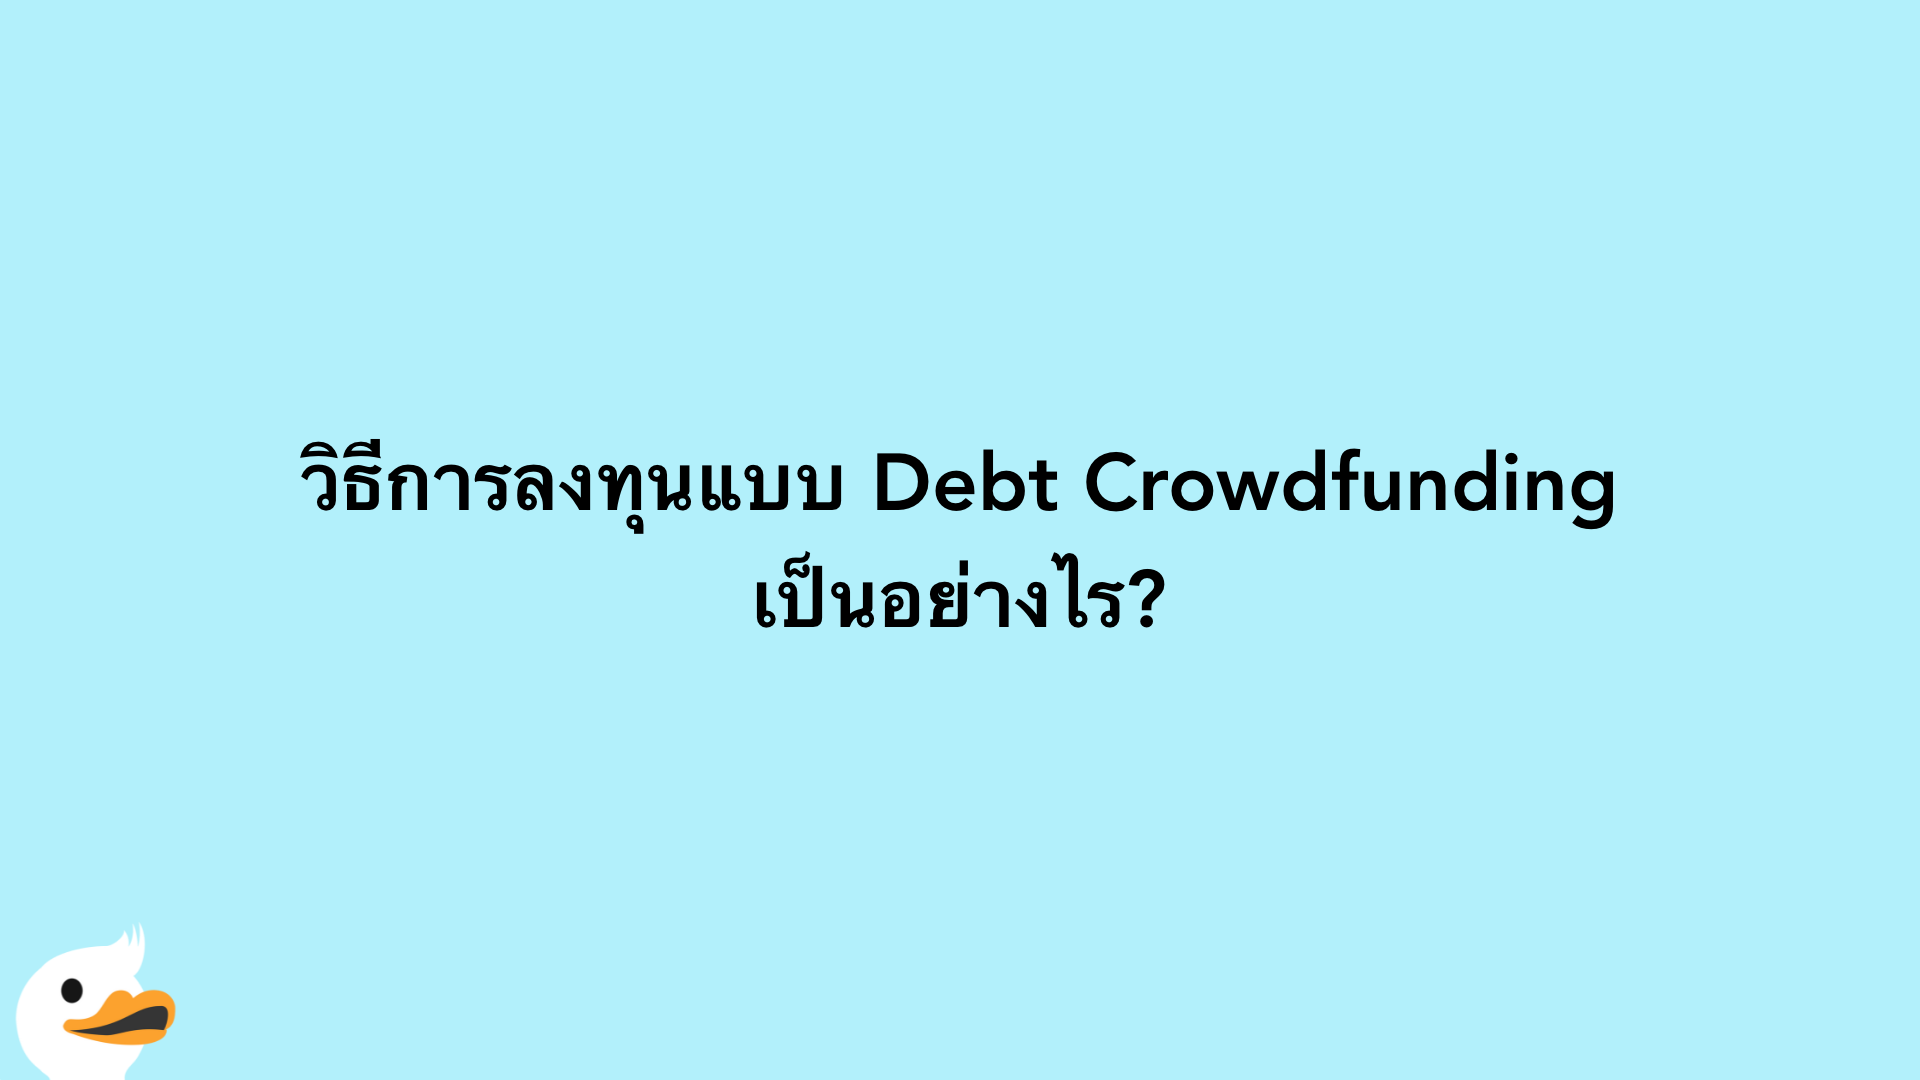 วิธีการลงทุนแบบ Debt Crowdfunding เป็นอย่างไร?